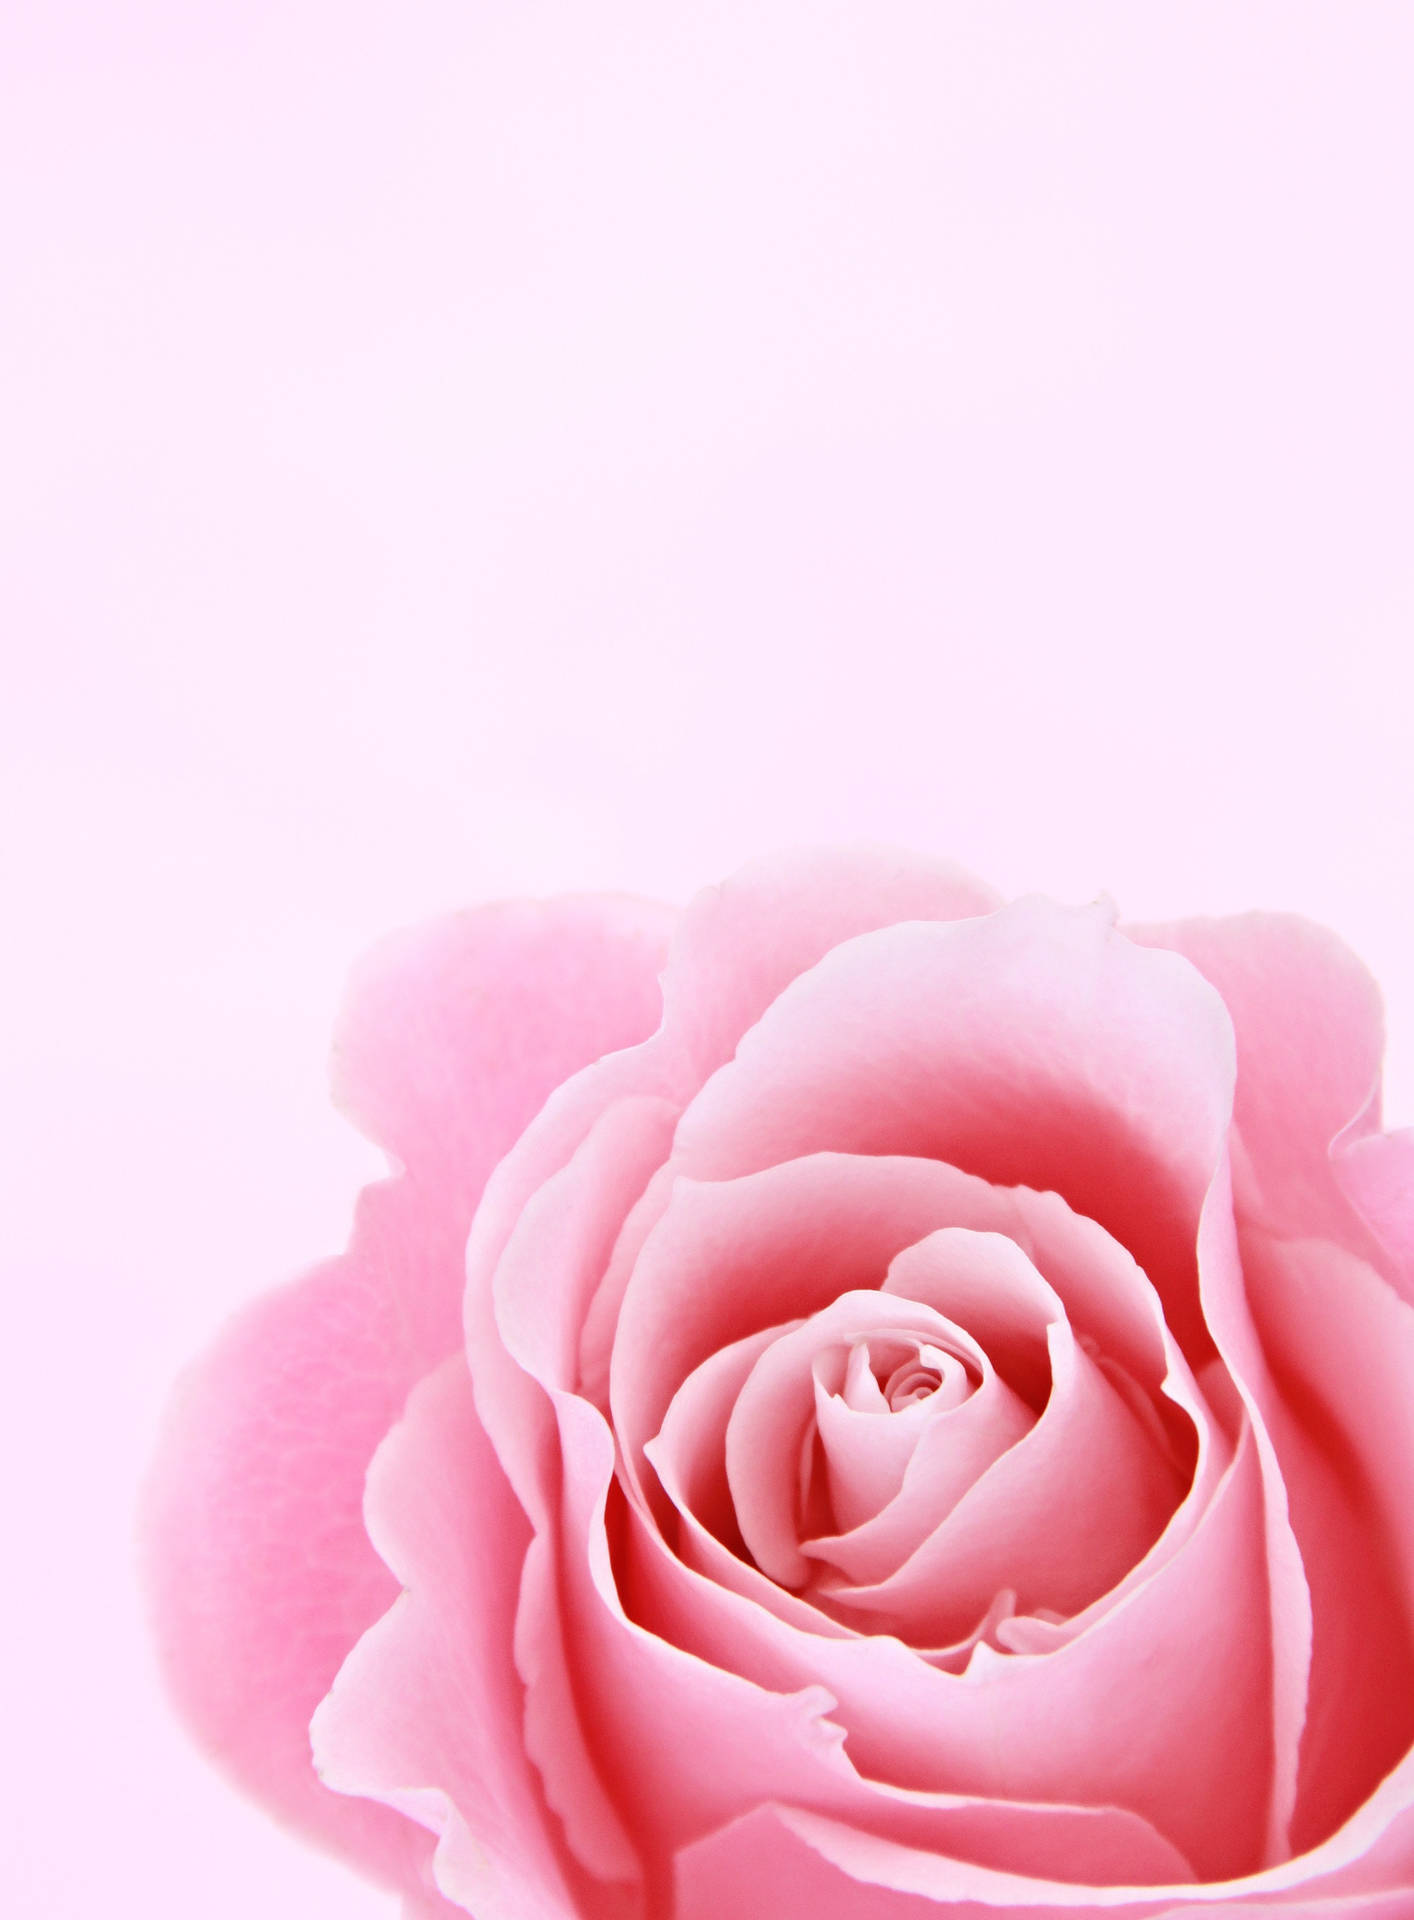 Iphone Lock Screen Soft Rose Wallpaper